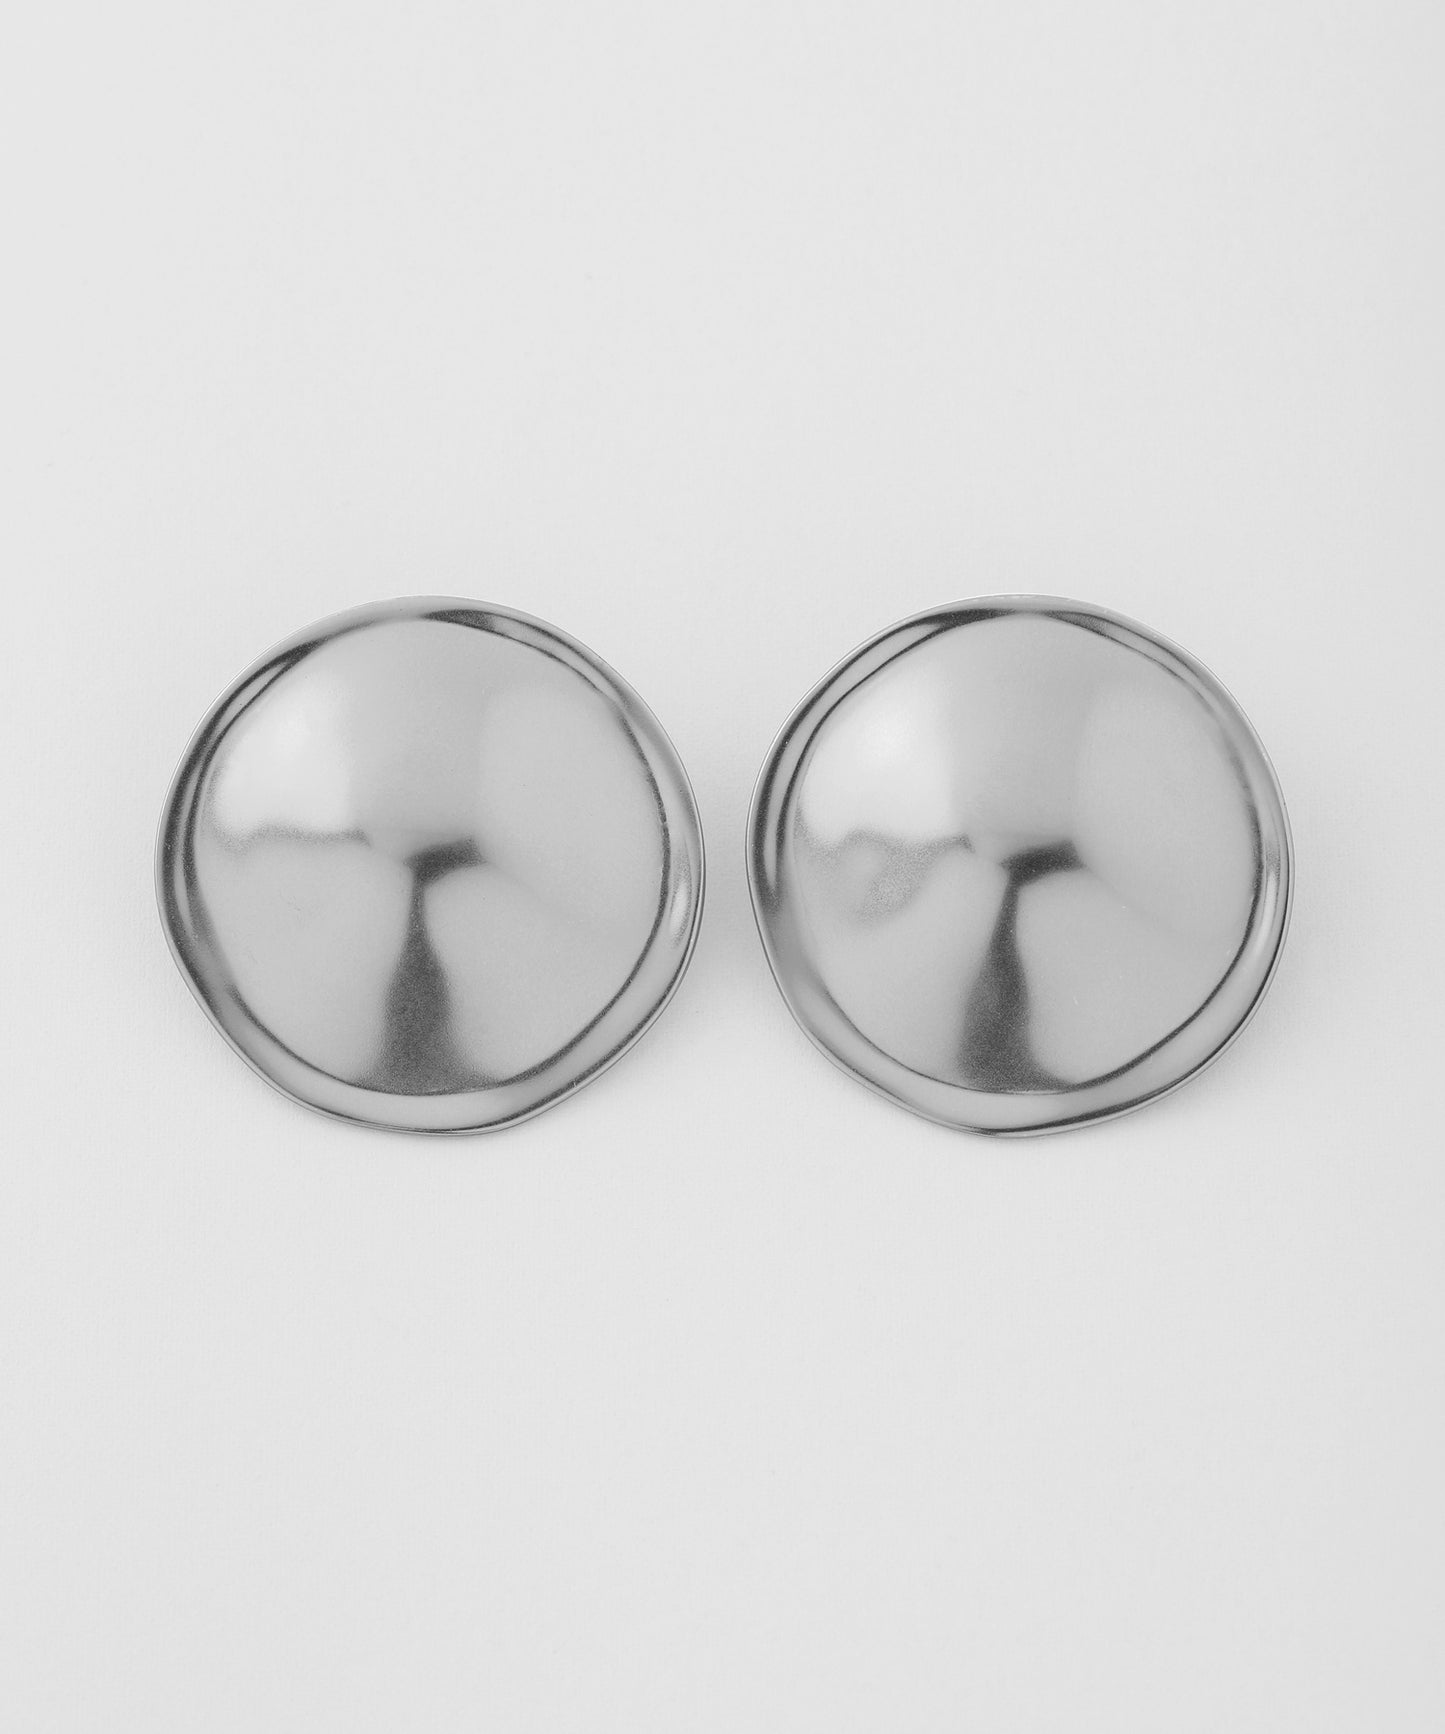 【Stainless Steel IP】 Big Plate Earrings [A]